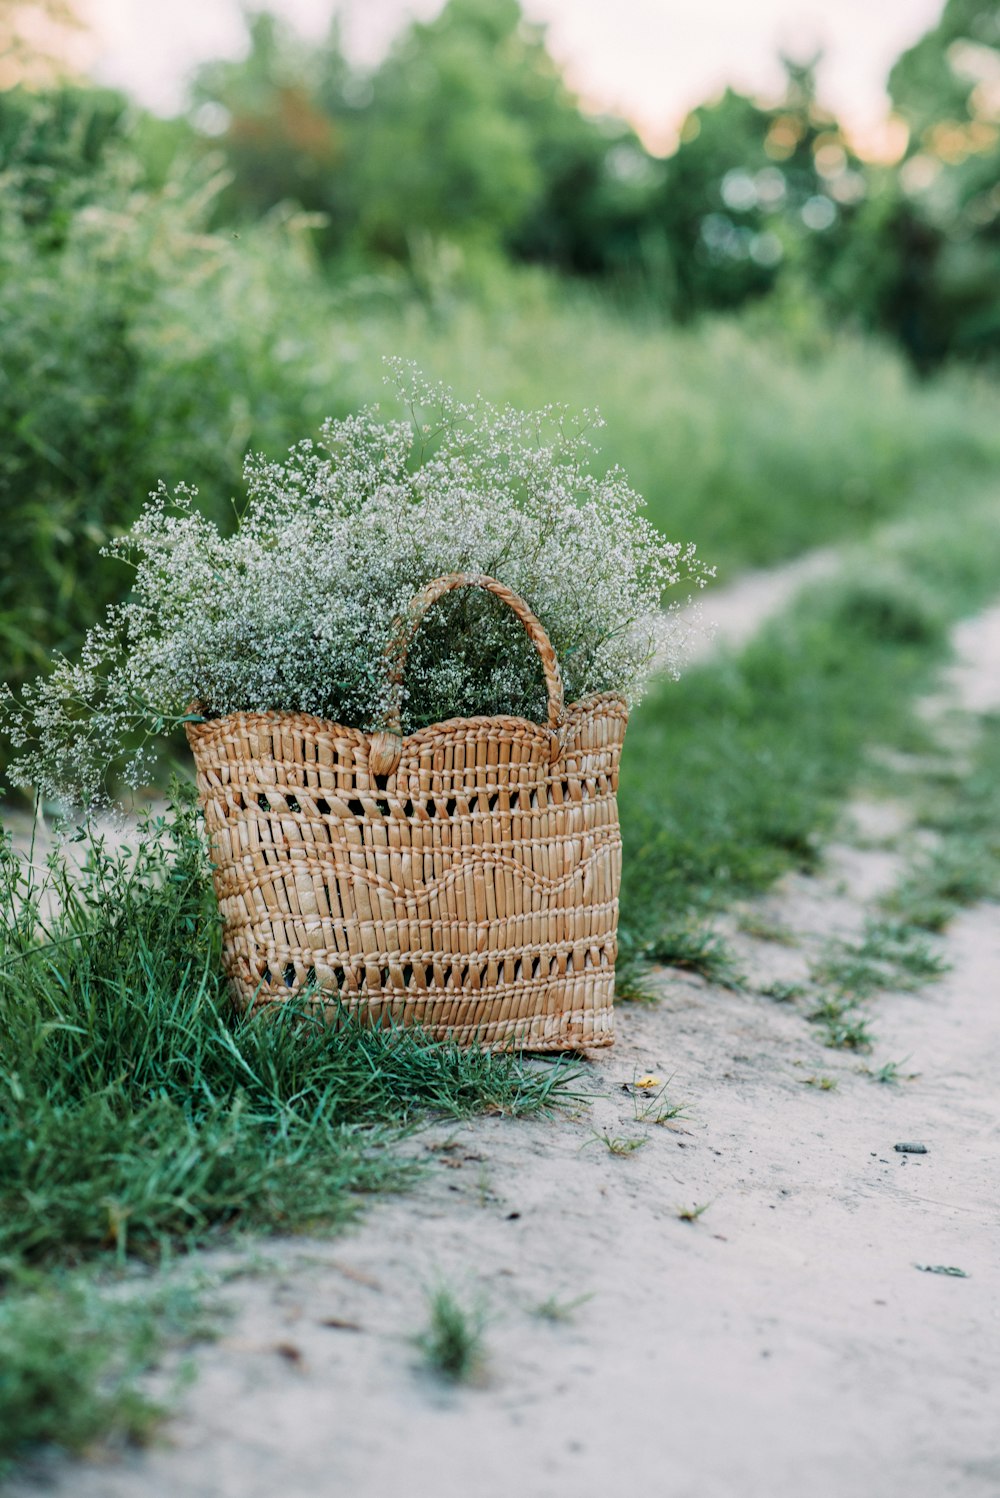 brown woven basket on green grass field